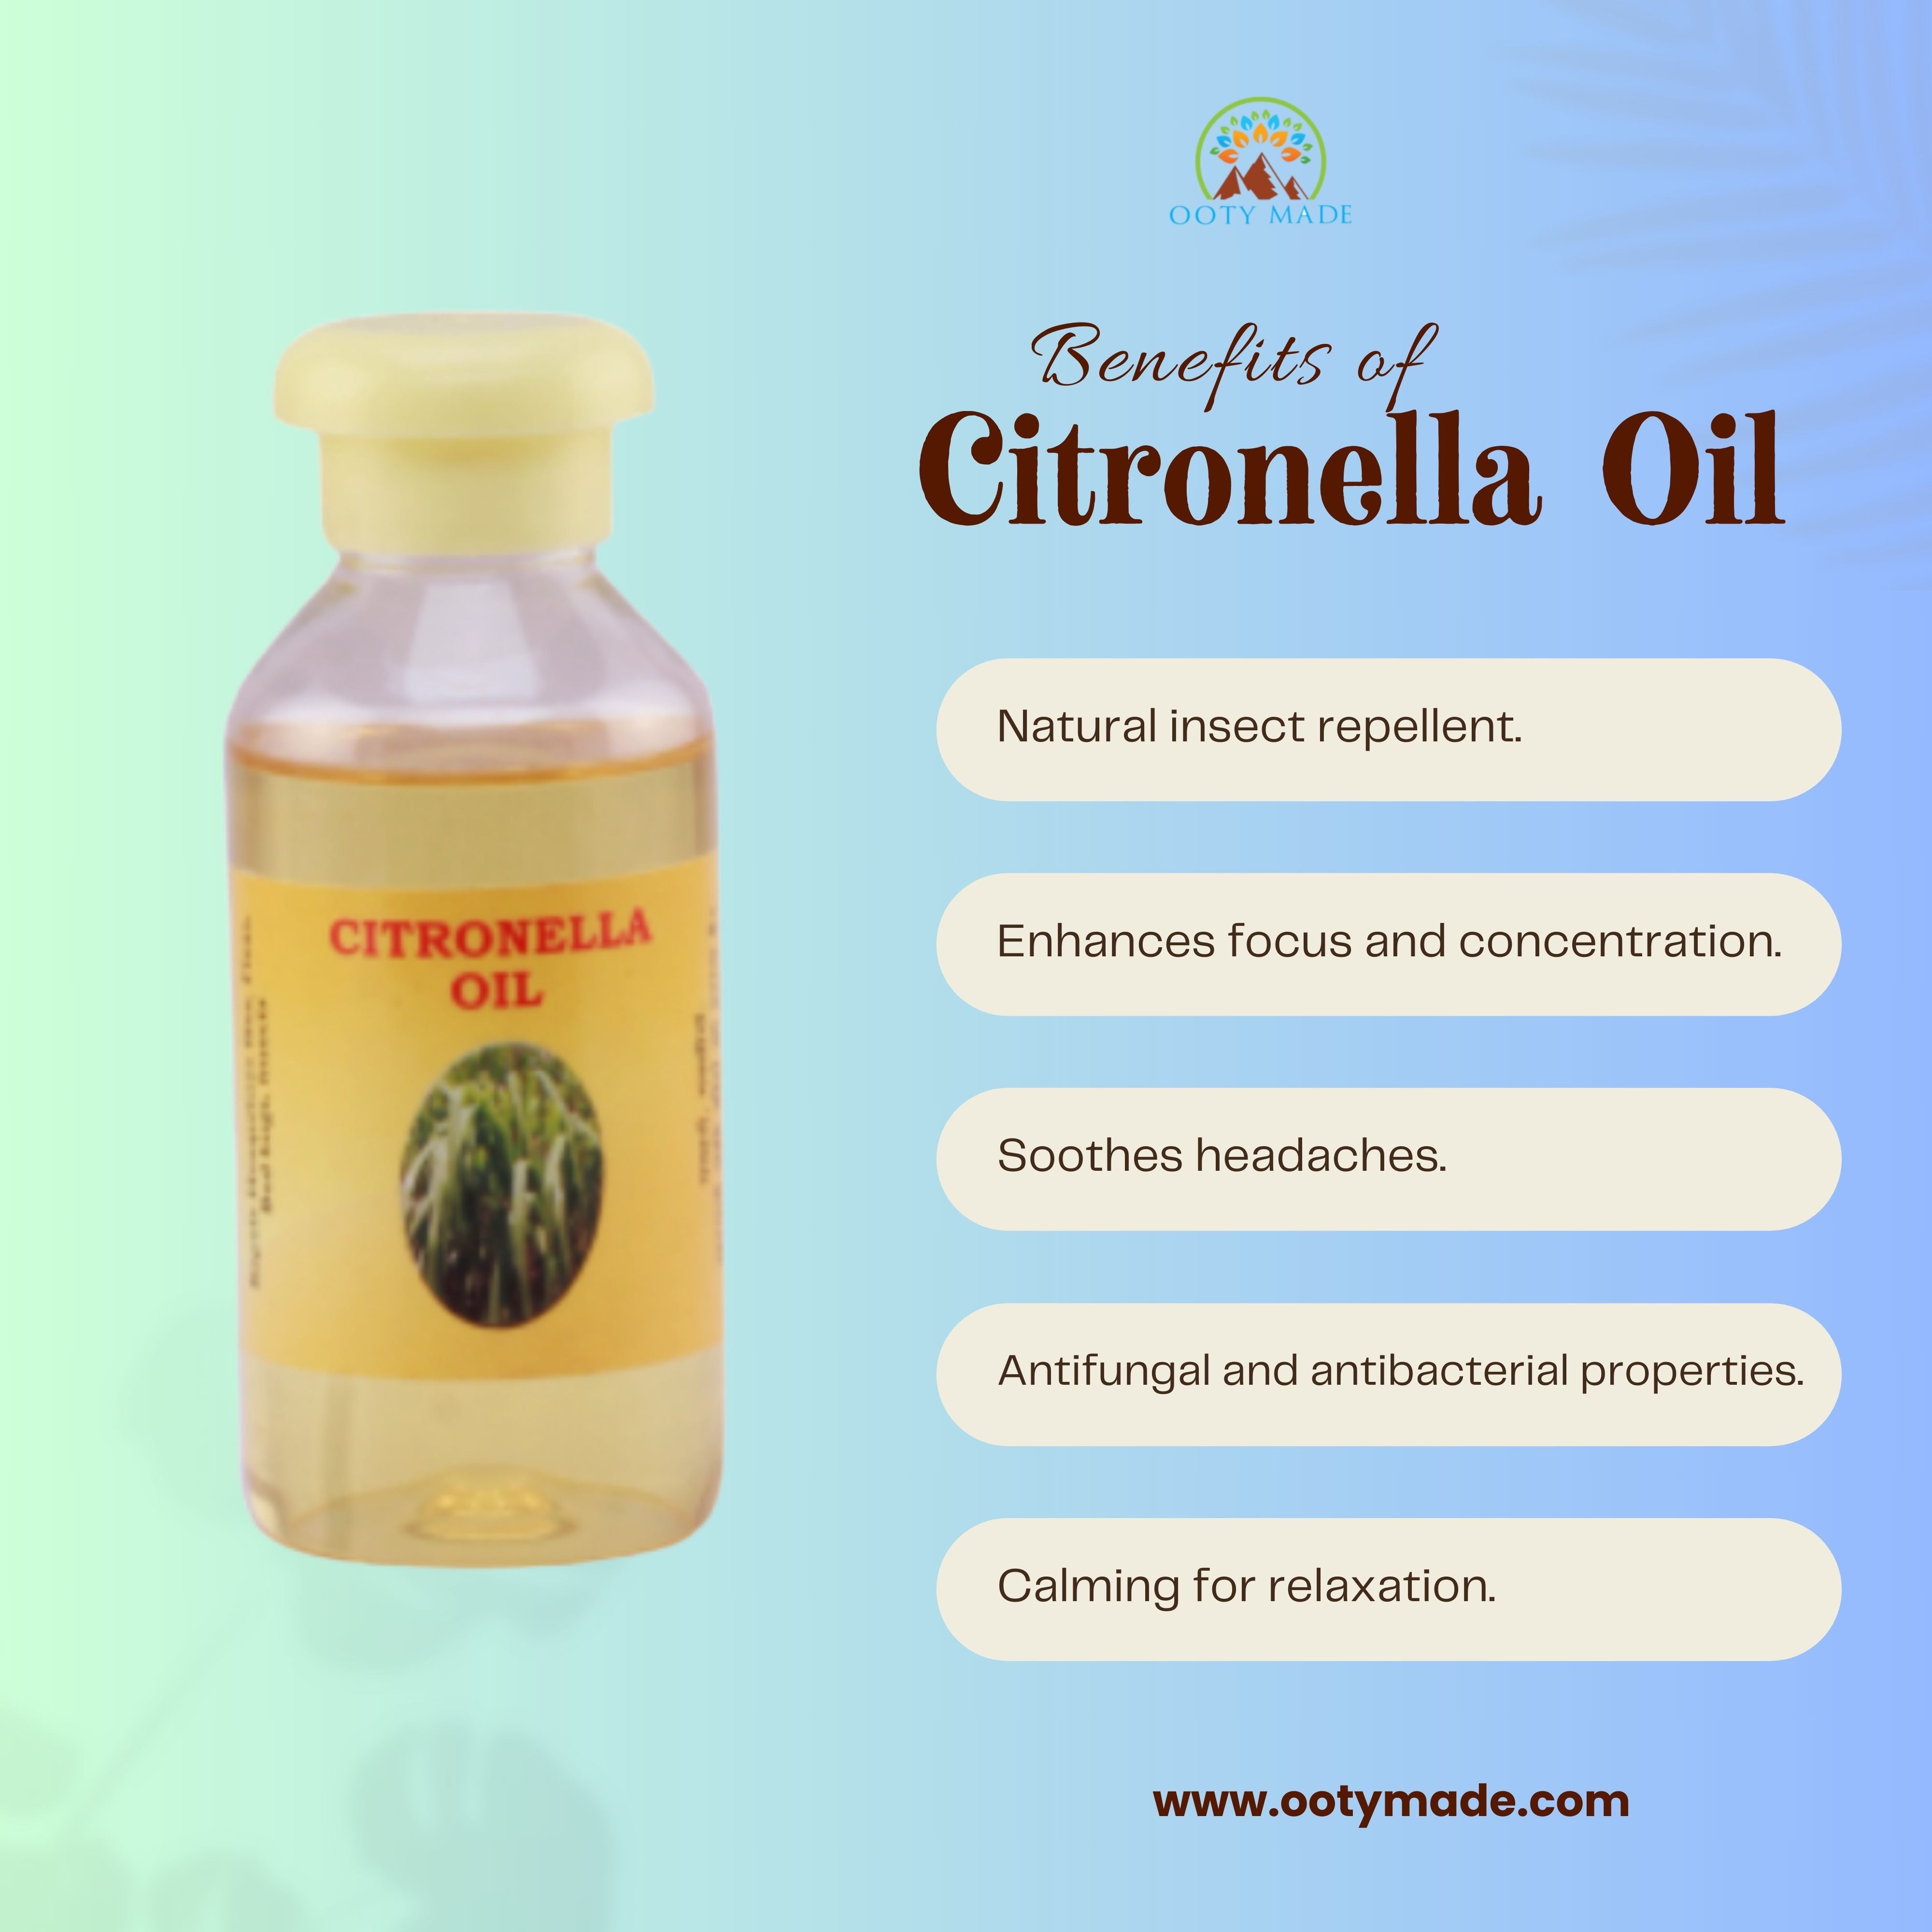 Pure Citronella Oil - Nature's Guardian: Aromatic Mosquito Repellent